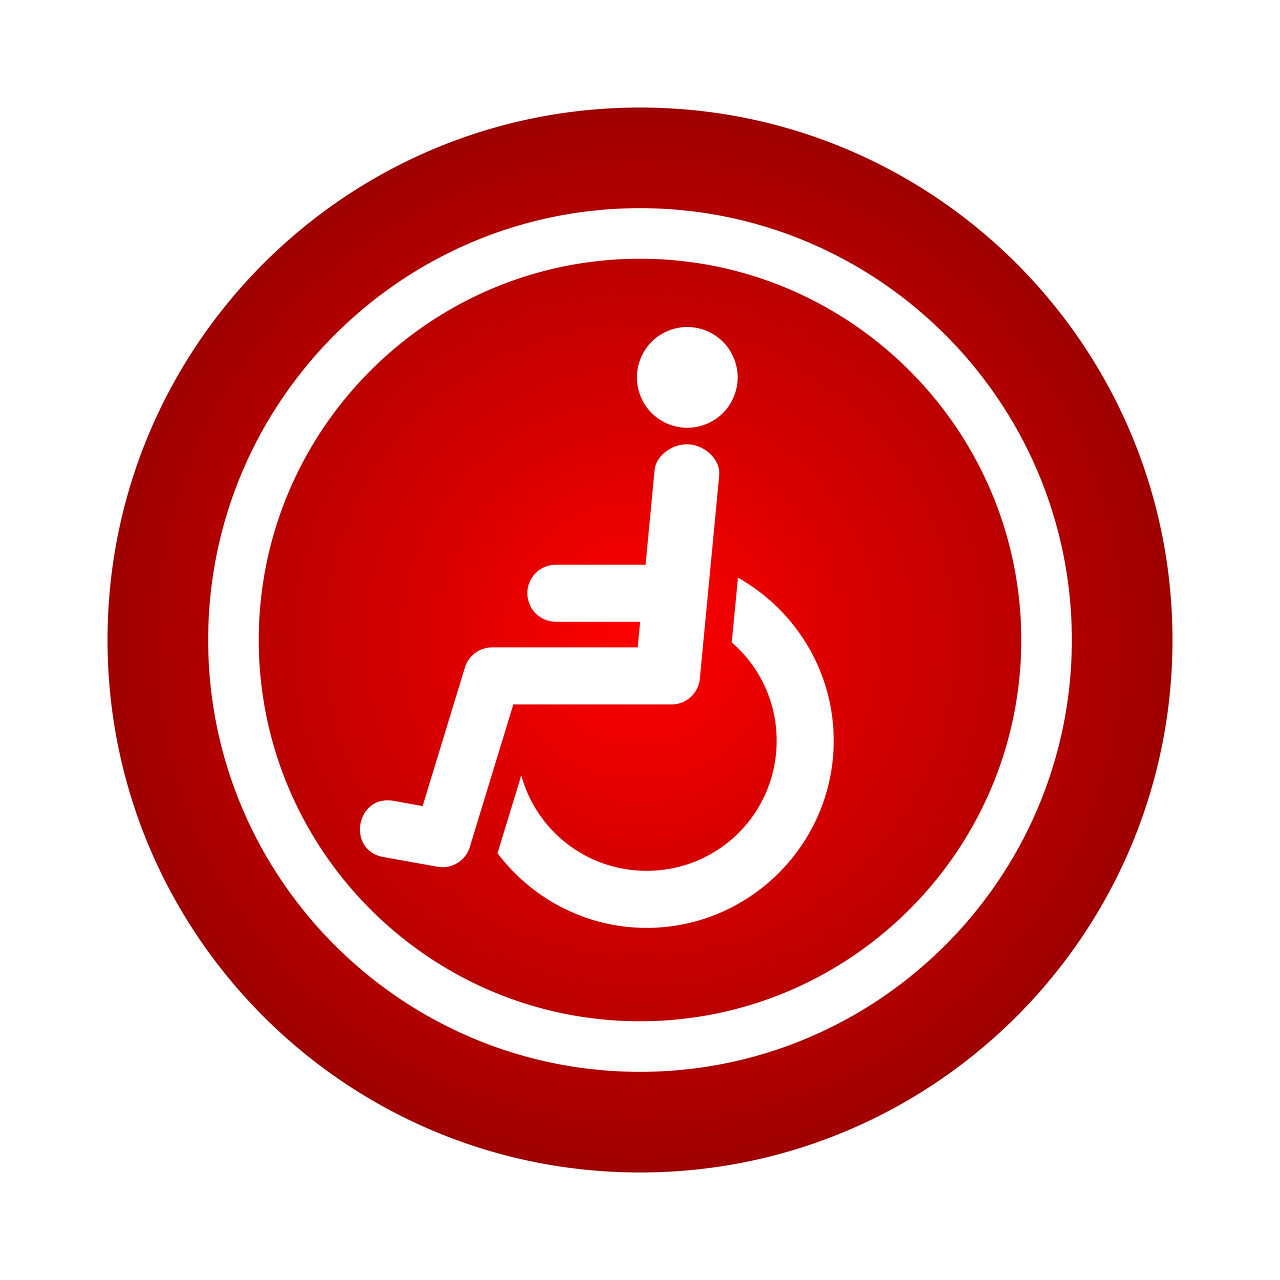 Moussanecare ervaring instelling gehandicaptenzorg verstandelijk gehandicapten